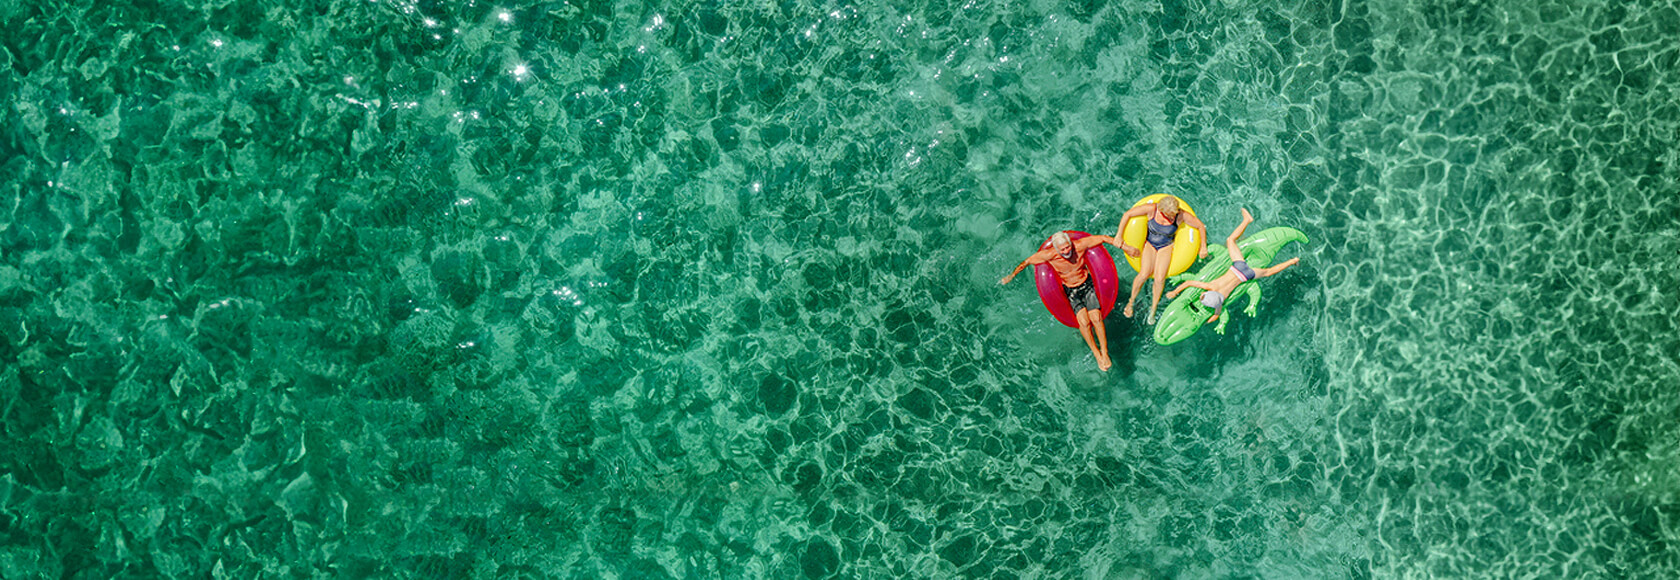 Aerial shot of people on floaties in a pool